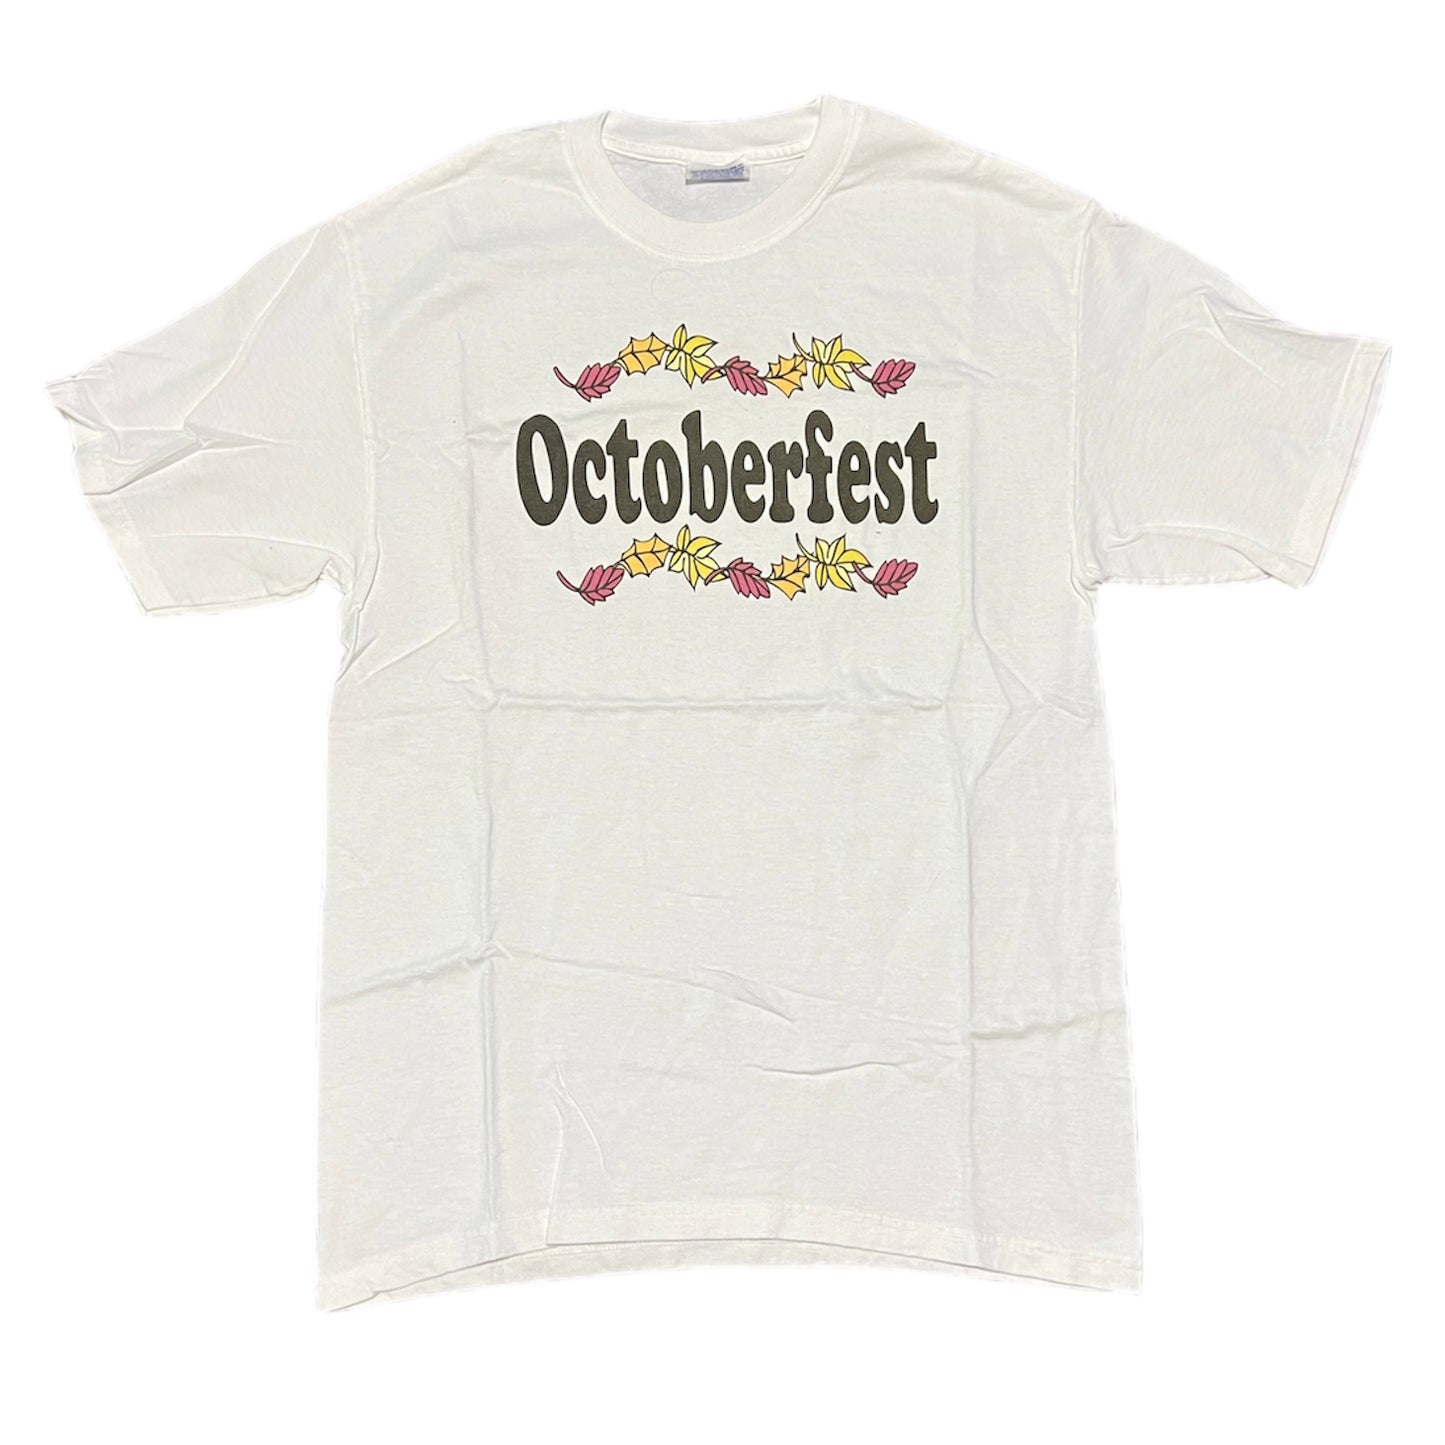 Octoberfest T-Shirt Size Medium